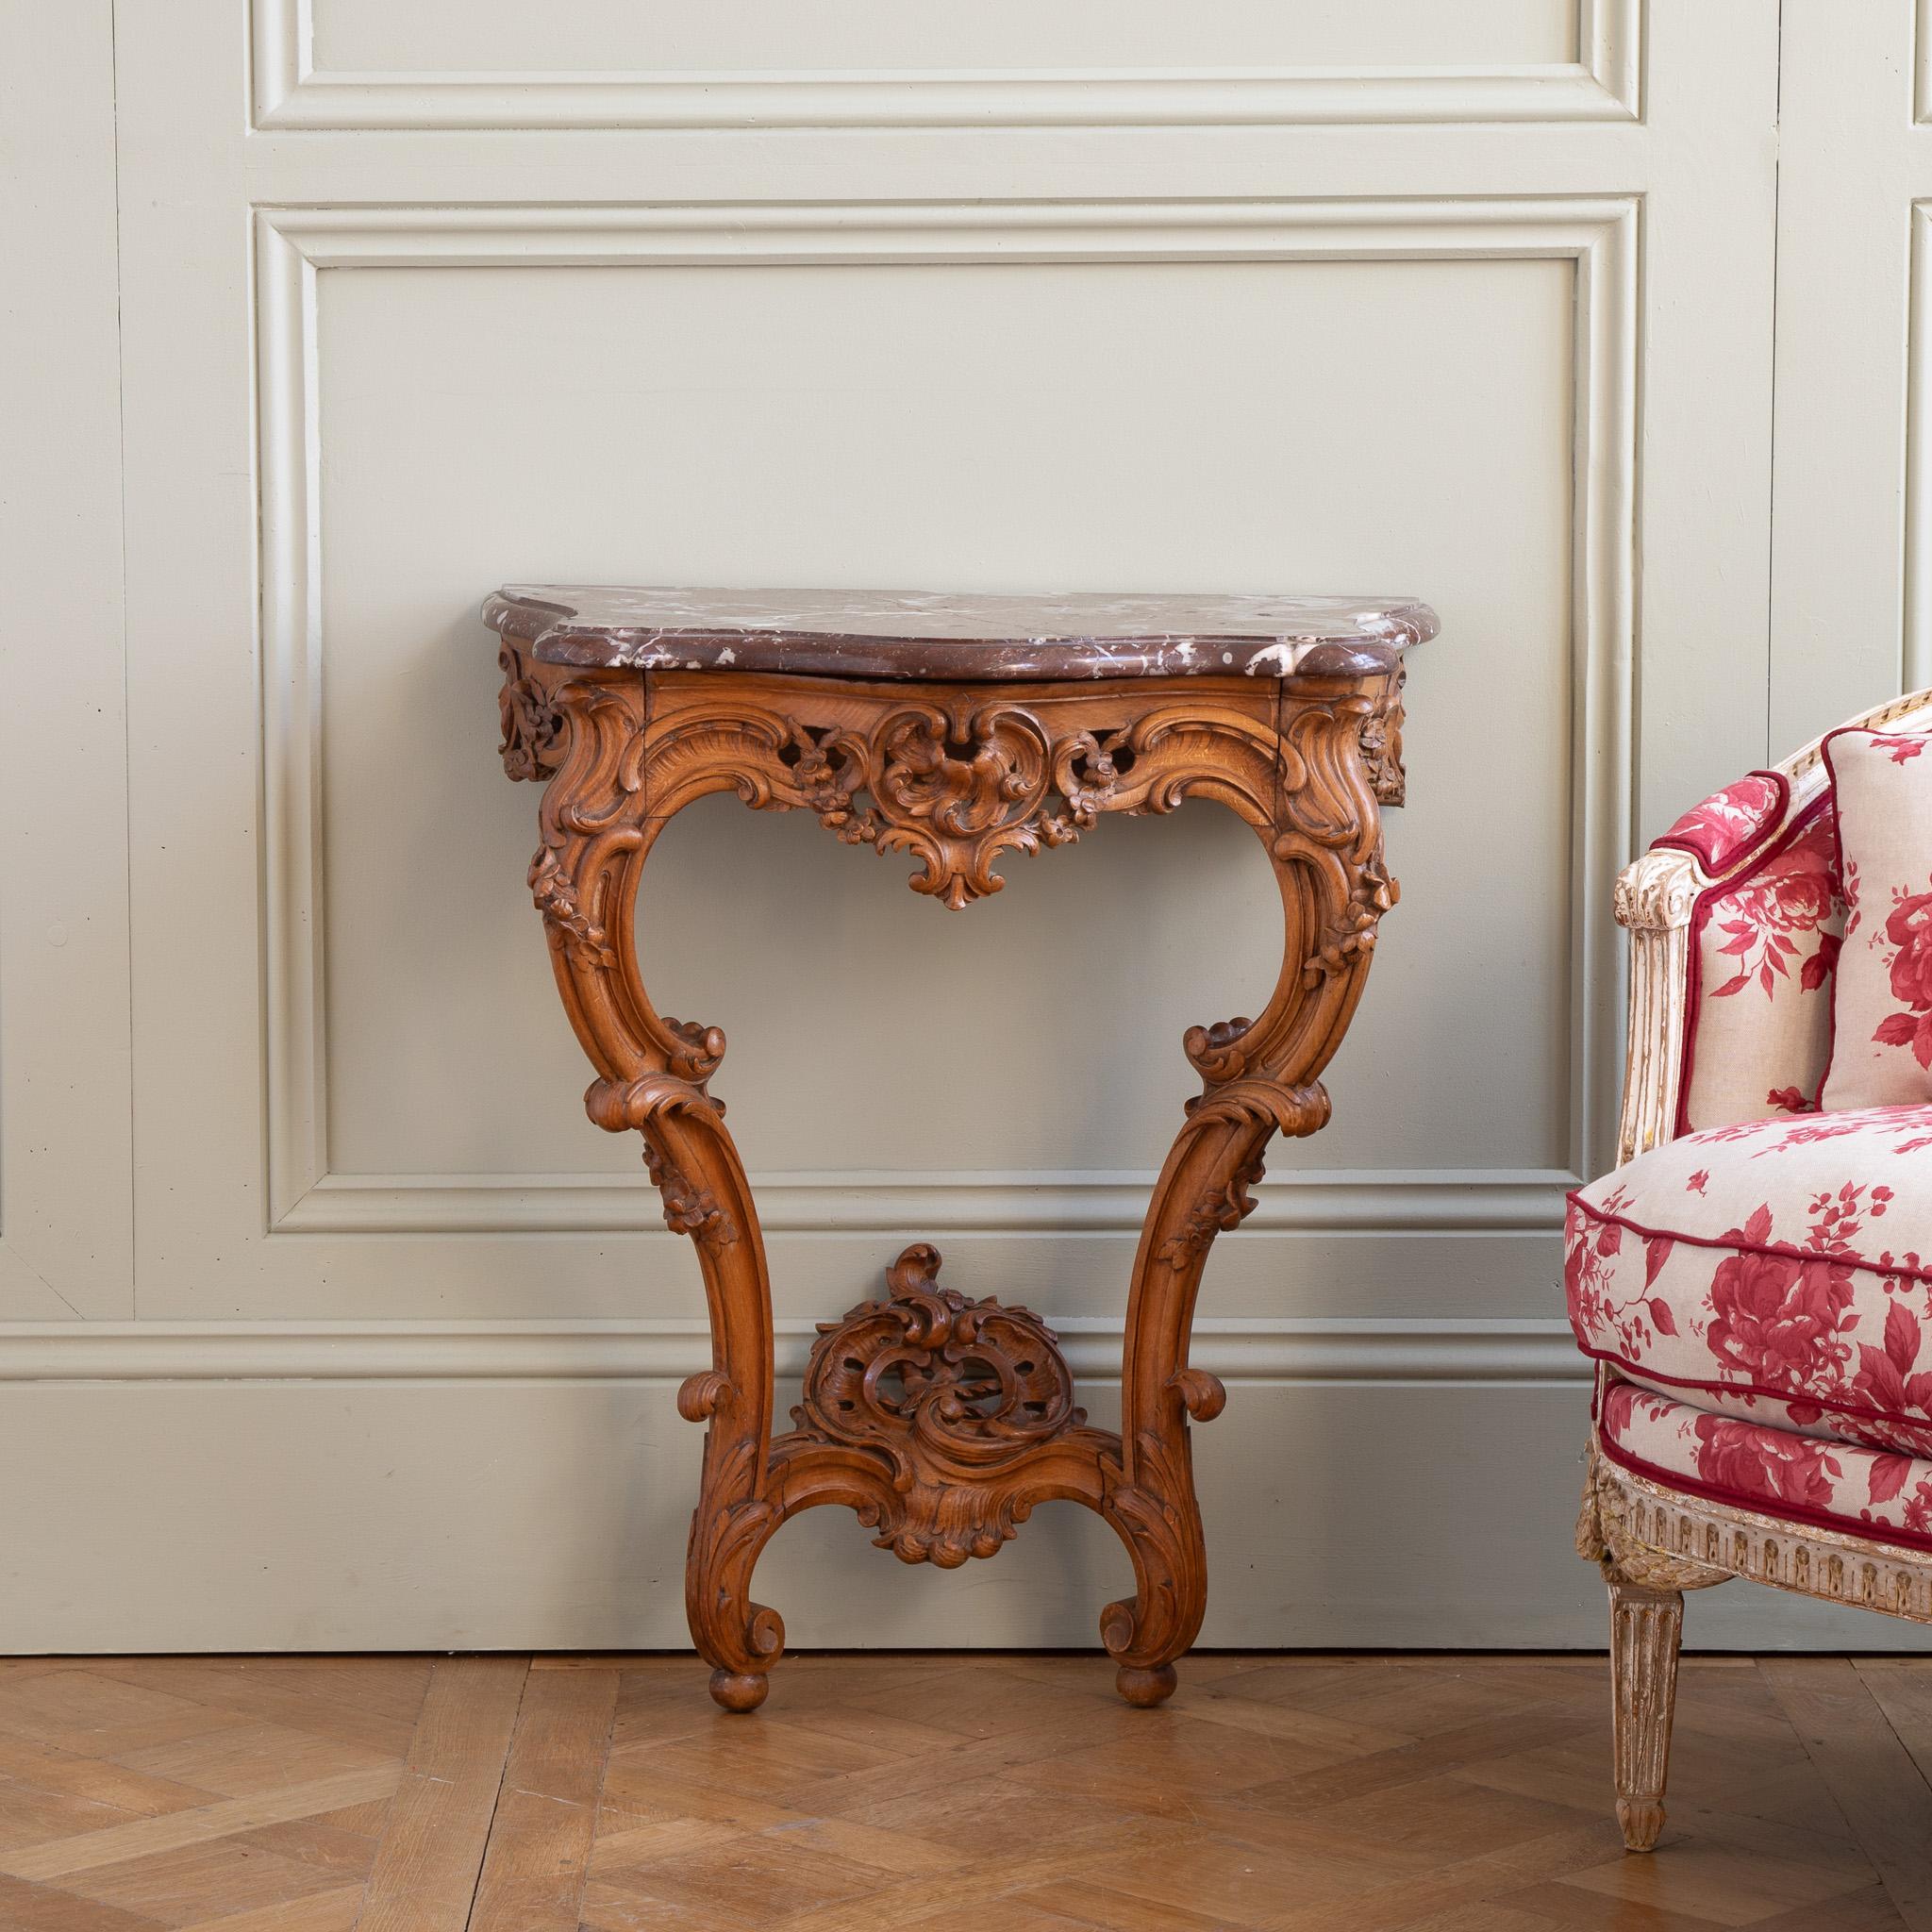 Französische Konsole im Louis-XV-Stil aus dem frühen 19. Jahrhundert, handgeschnitzt in Nussbaum. Das Holz hat einen schönen warmen Farbton mit honigartigen Nuancen. Die Marmorplatte 